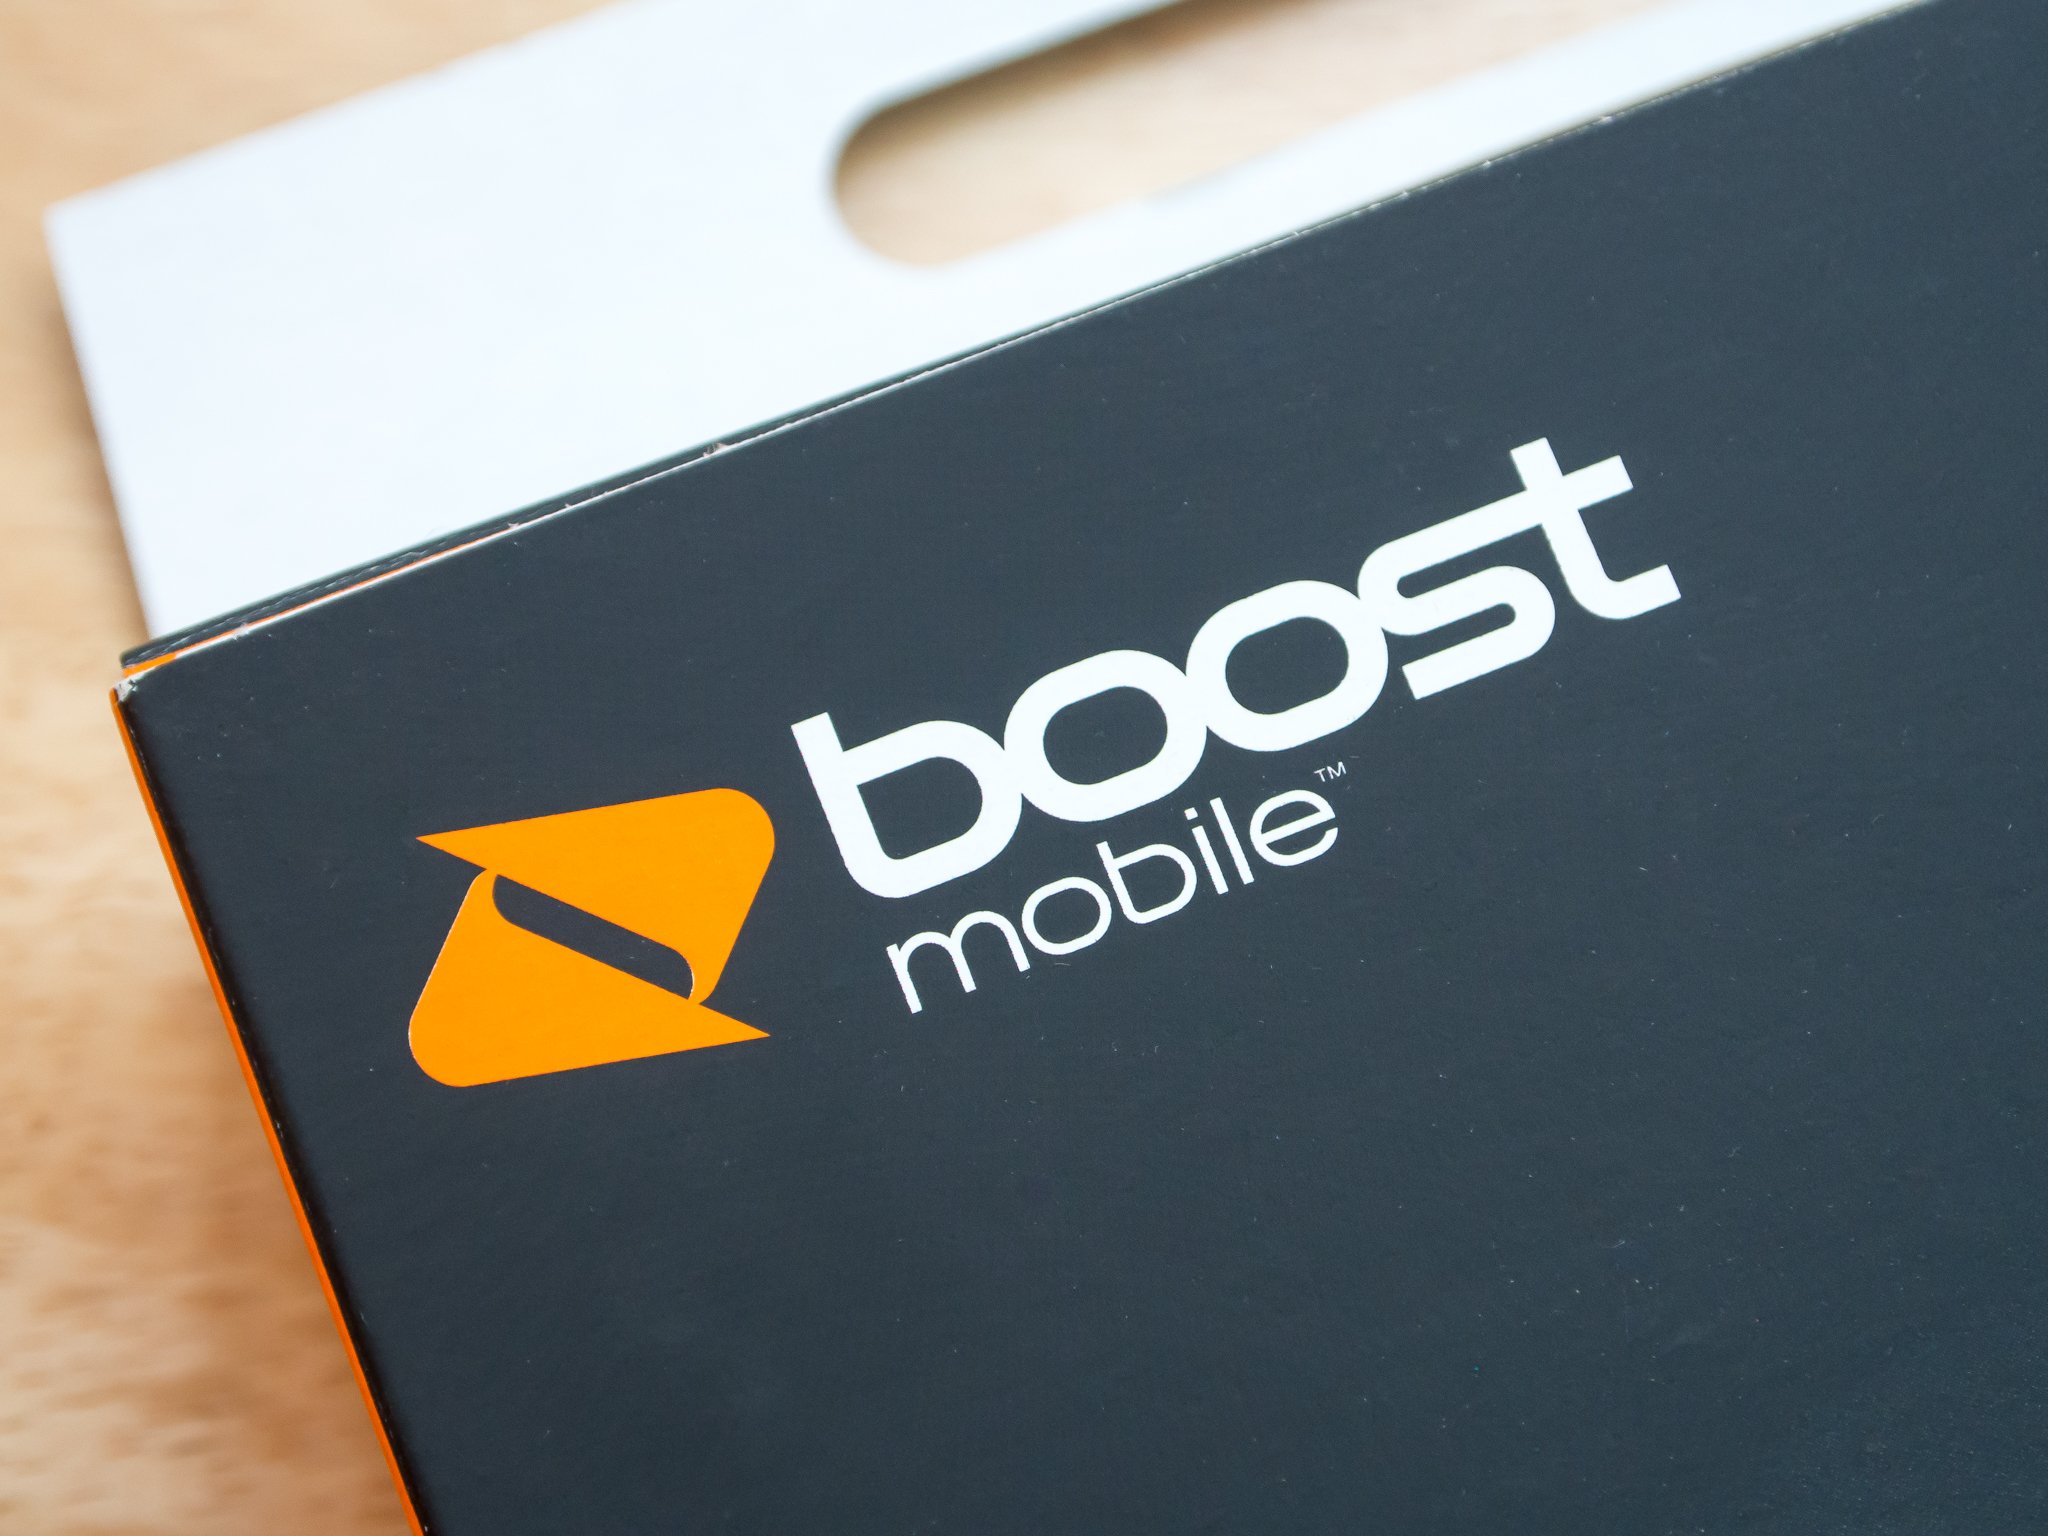 Boost mobile box